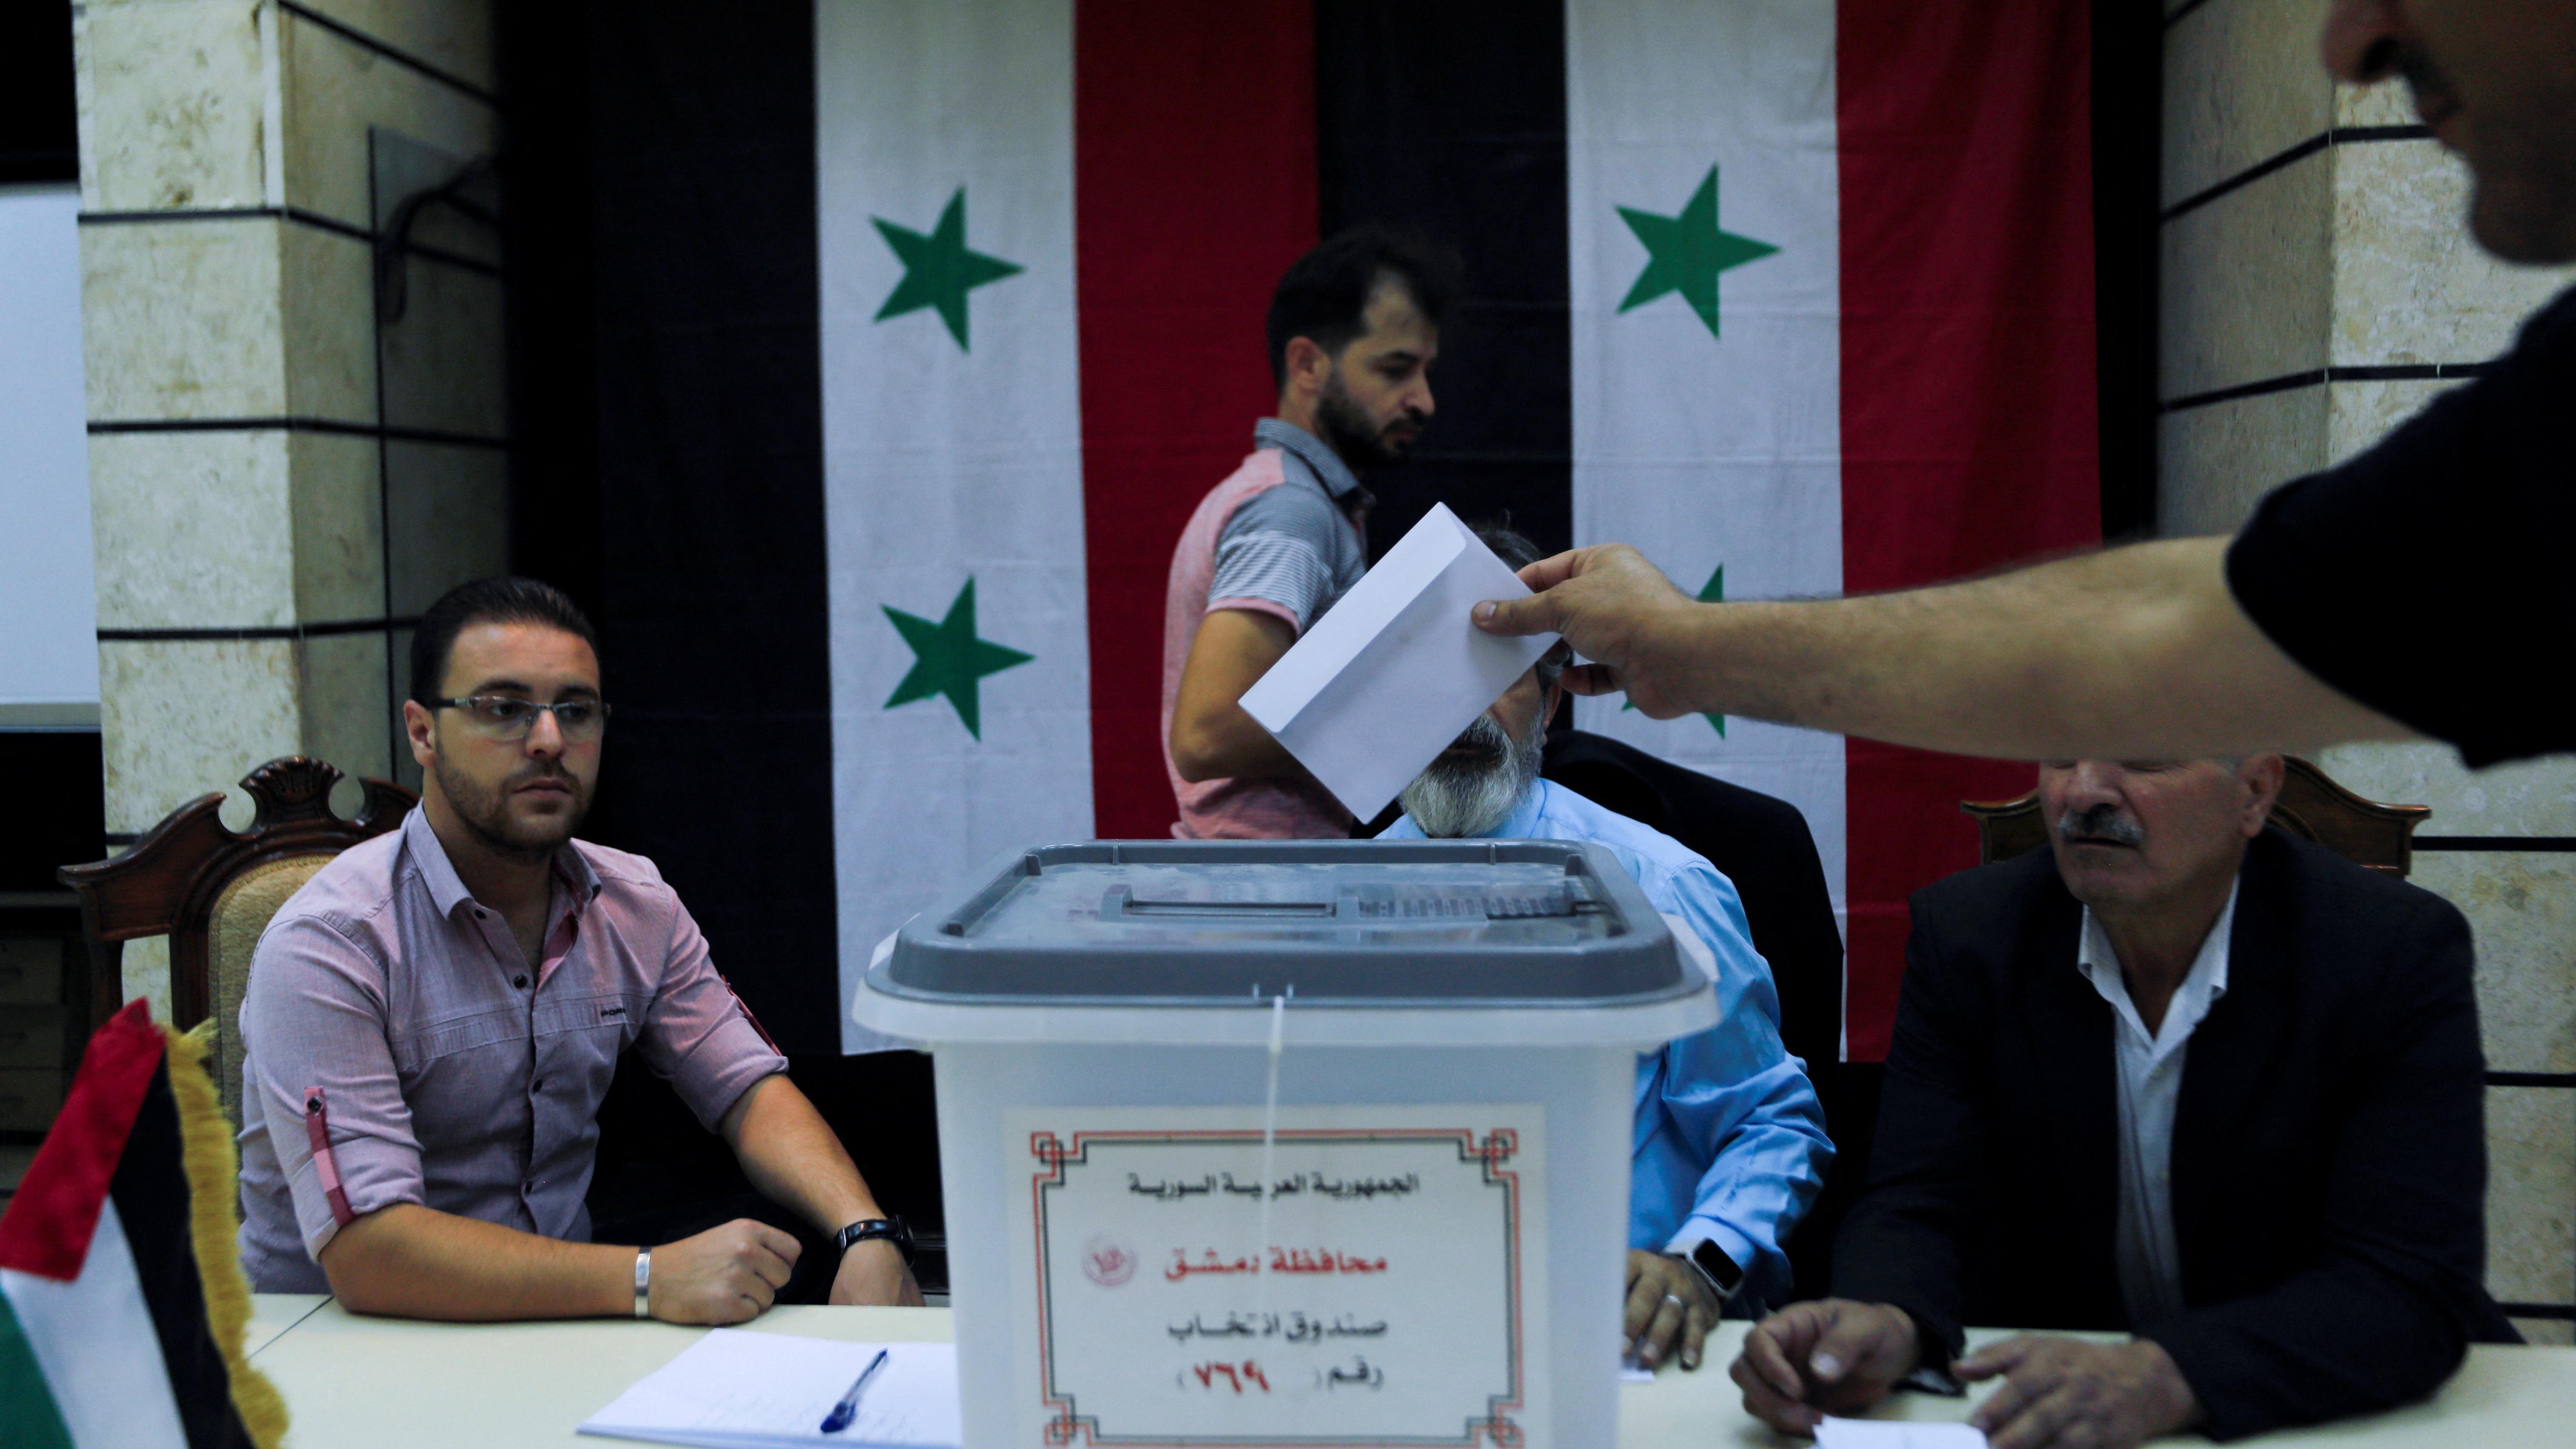 المقداد: انتخابات مجلس الشعب تعبير حقيقي عن إيمان الشعب السوري بالديمقراطية